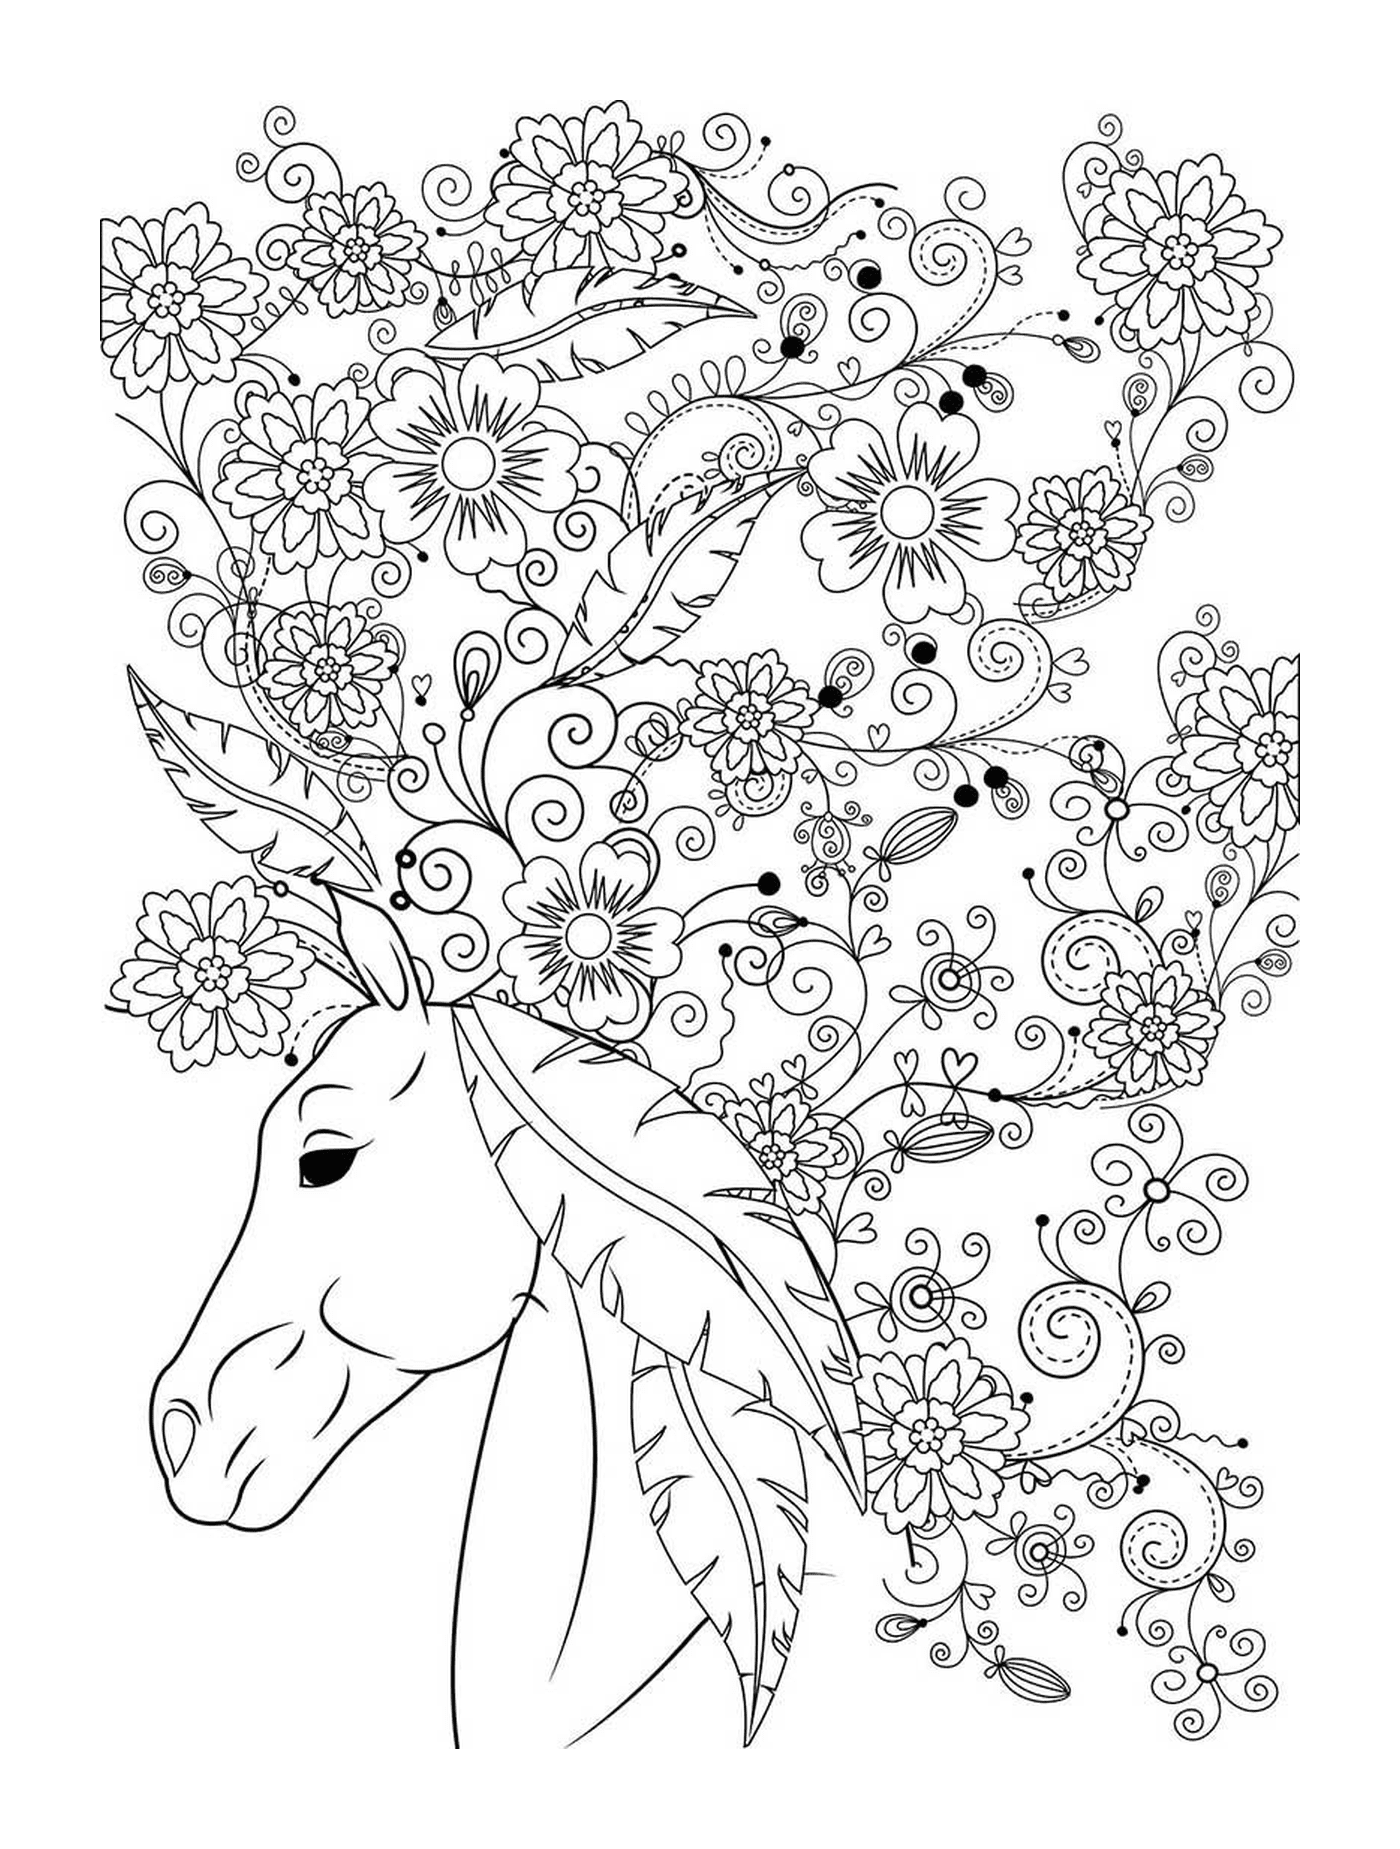  Ein Erwachsener eines Pferdes mit Blumen 